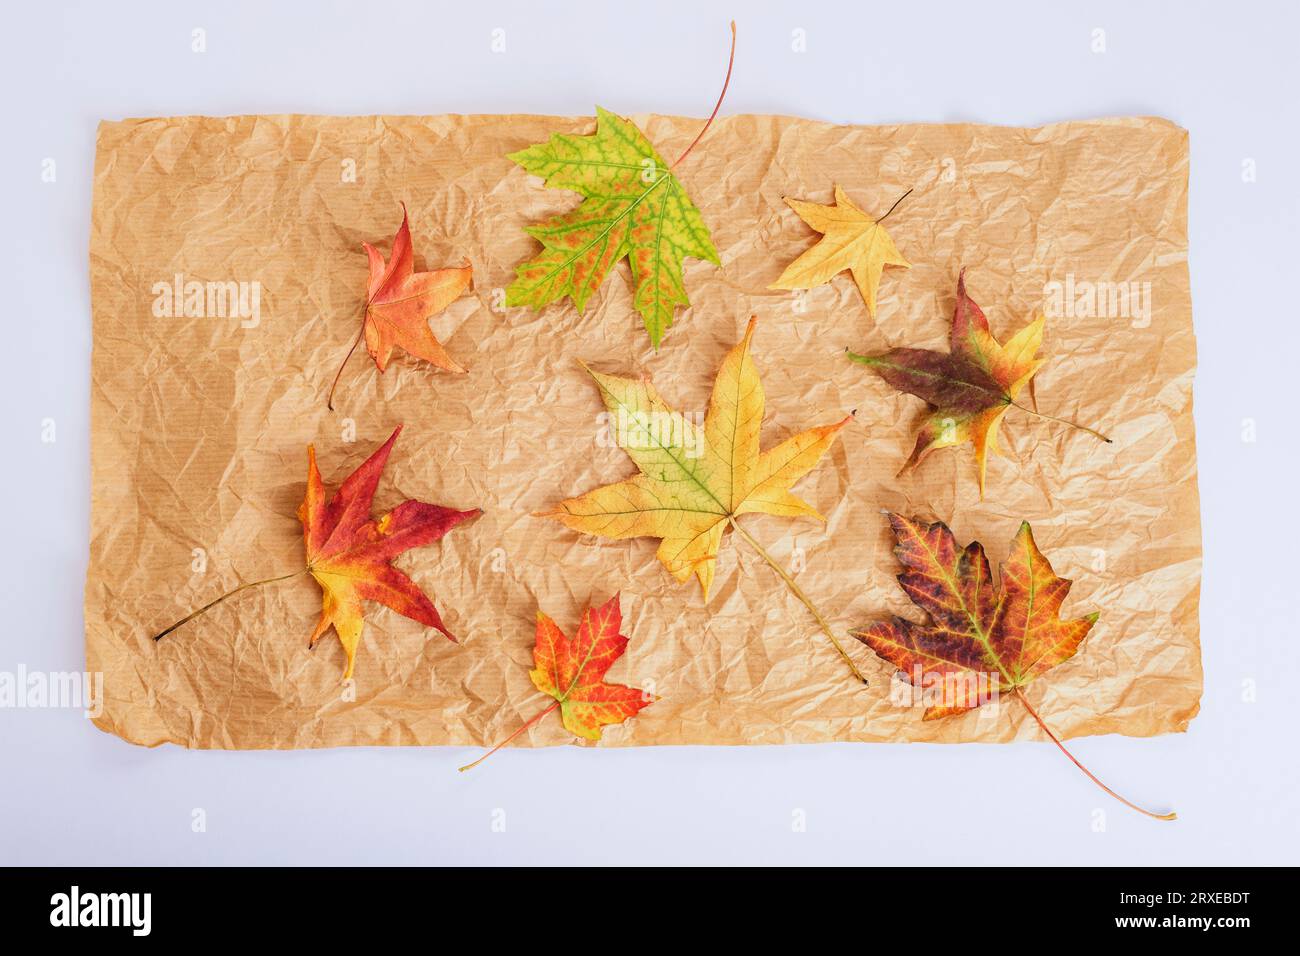 Feuilles d'automne colorées sur papier artisanal, fond blanc. Concept d'automne. Vue de dessus, pose à plat. Banque D'Images